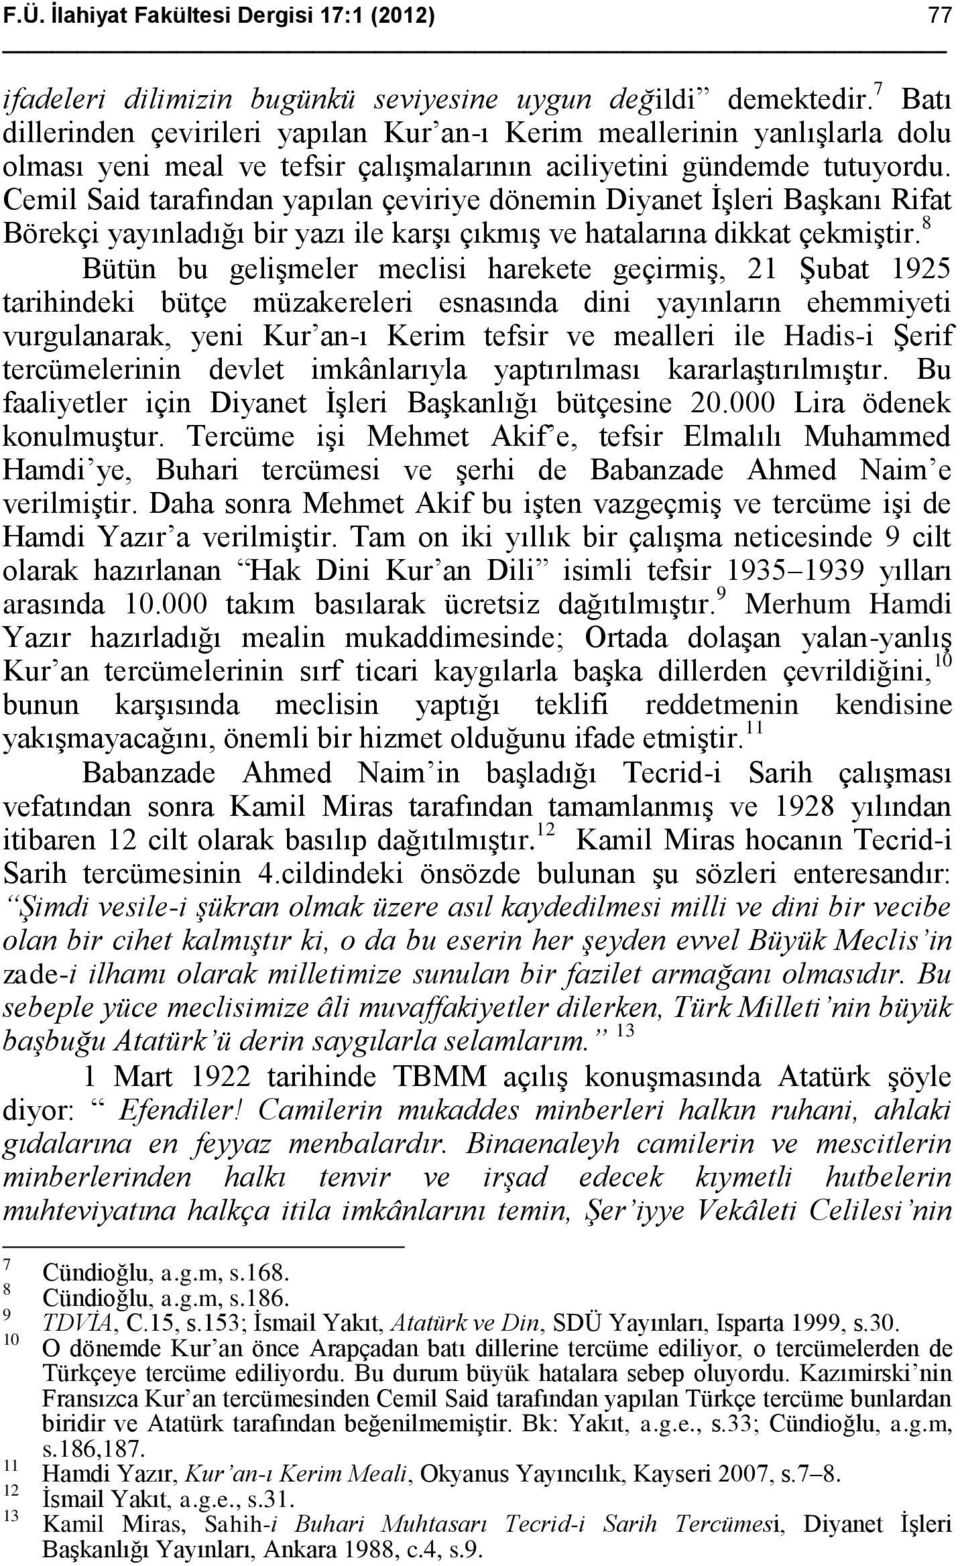 Cemil Said tarafından yapılan çeviriye dönemin Diyanet İşleri Başkanı Rifat Börekçi yayınladığı bir yazı ile karşı çıkmış ve hatalarına dikkat çekmiştir.